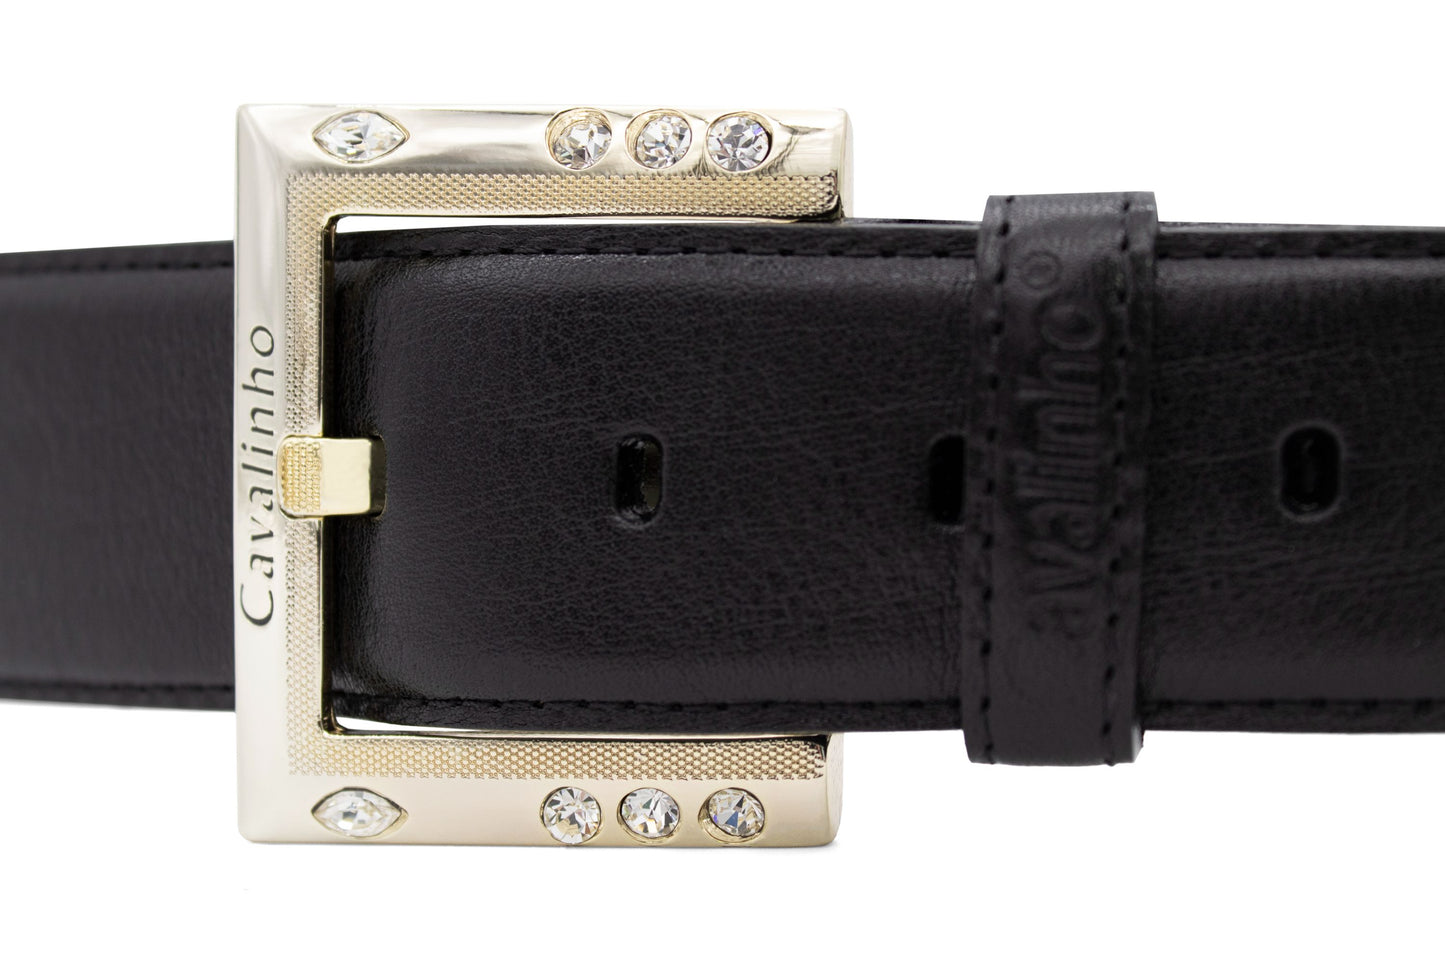 #color_ Black Gold | Cavalinho Classic Leather Belt - Black Gold - 58010910.01_2